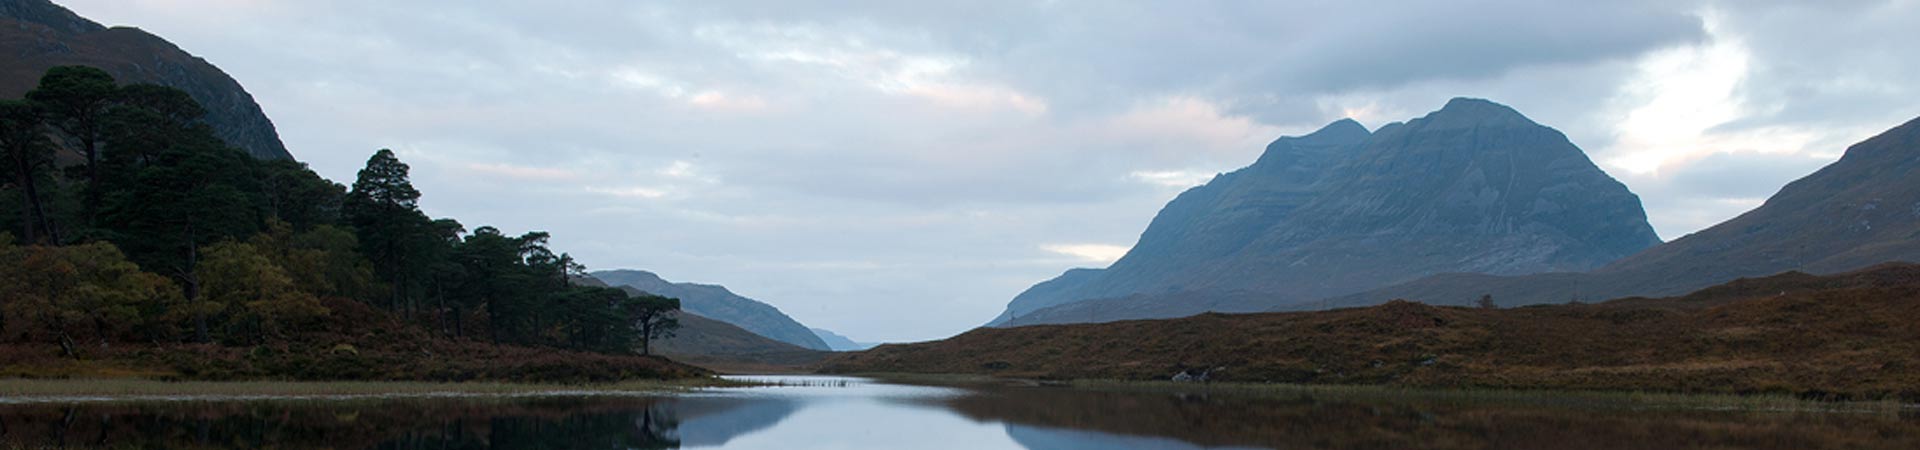 Beautiful Scottish landscape photograph